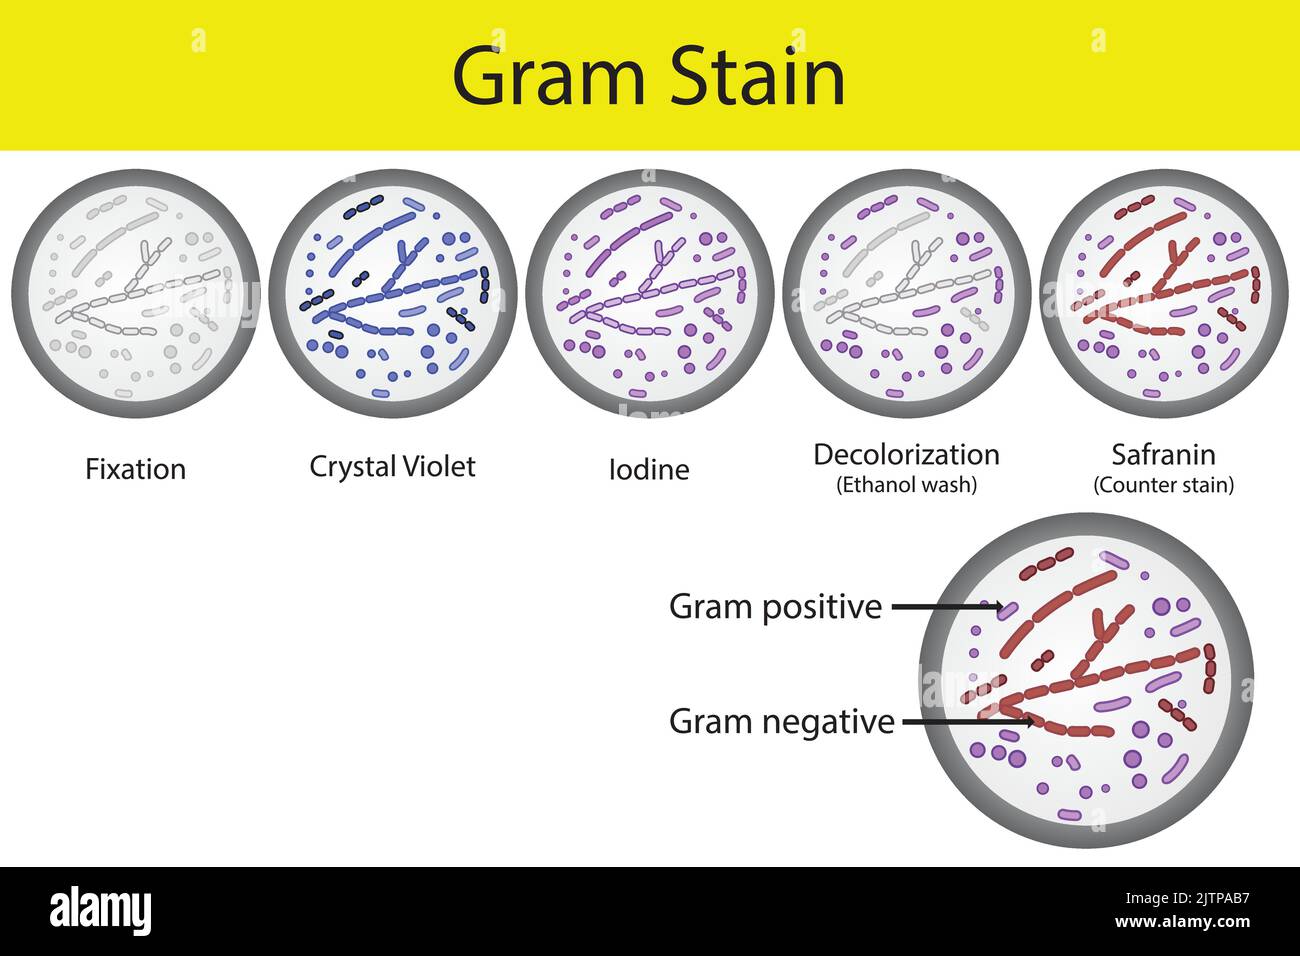 Diagramm mit gramfärbendem Mikrobiologie Laborverfahren Schritte - Mikrobiologie Labor mit Kristallviolett und Safranin Stock Vektor